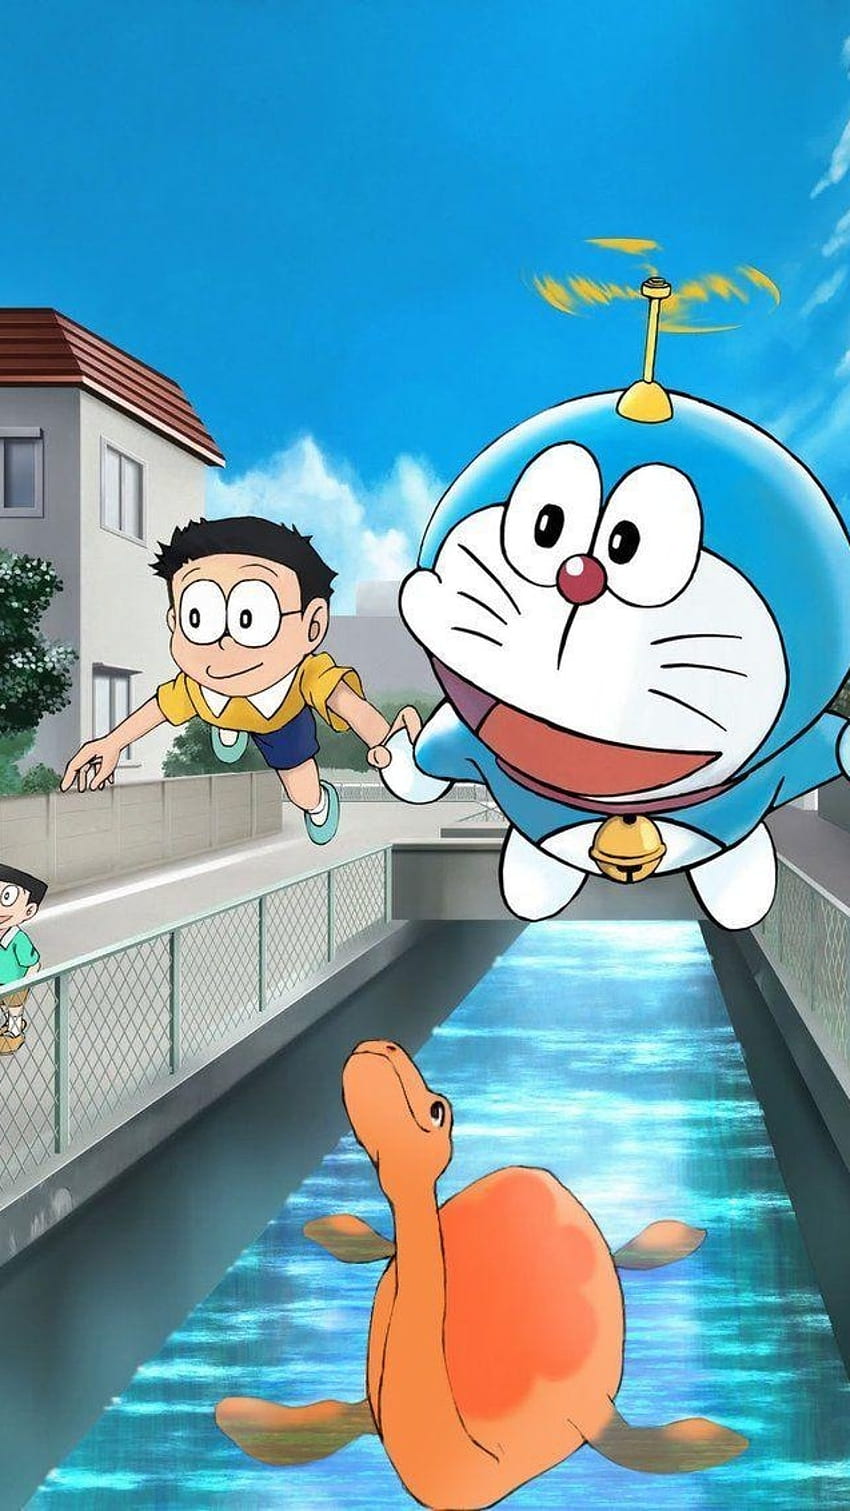 Shinchan và Doraemon wallpaper là sự kết hợp tuyệt vời giữa hai nhân vật nổi tiếng trong thế giới anime . Hãy cùng khám phá bộ sưu tập hình nền độc đáo này để có những trải nghiệm đáng nhớ. Sự kết hợp không còn quá xa lạ nữa nhưng sẽ luôn giúp bạn giảm căng thẳng và cảm thấy thư giãn.